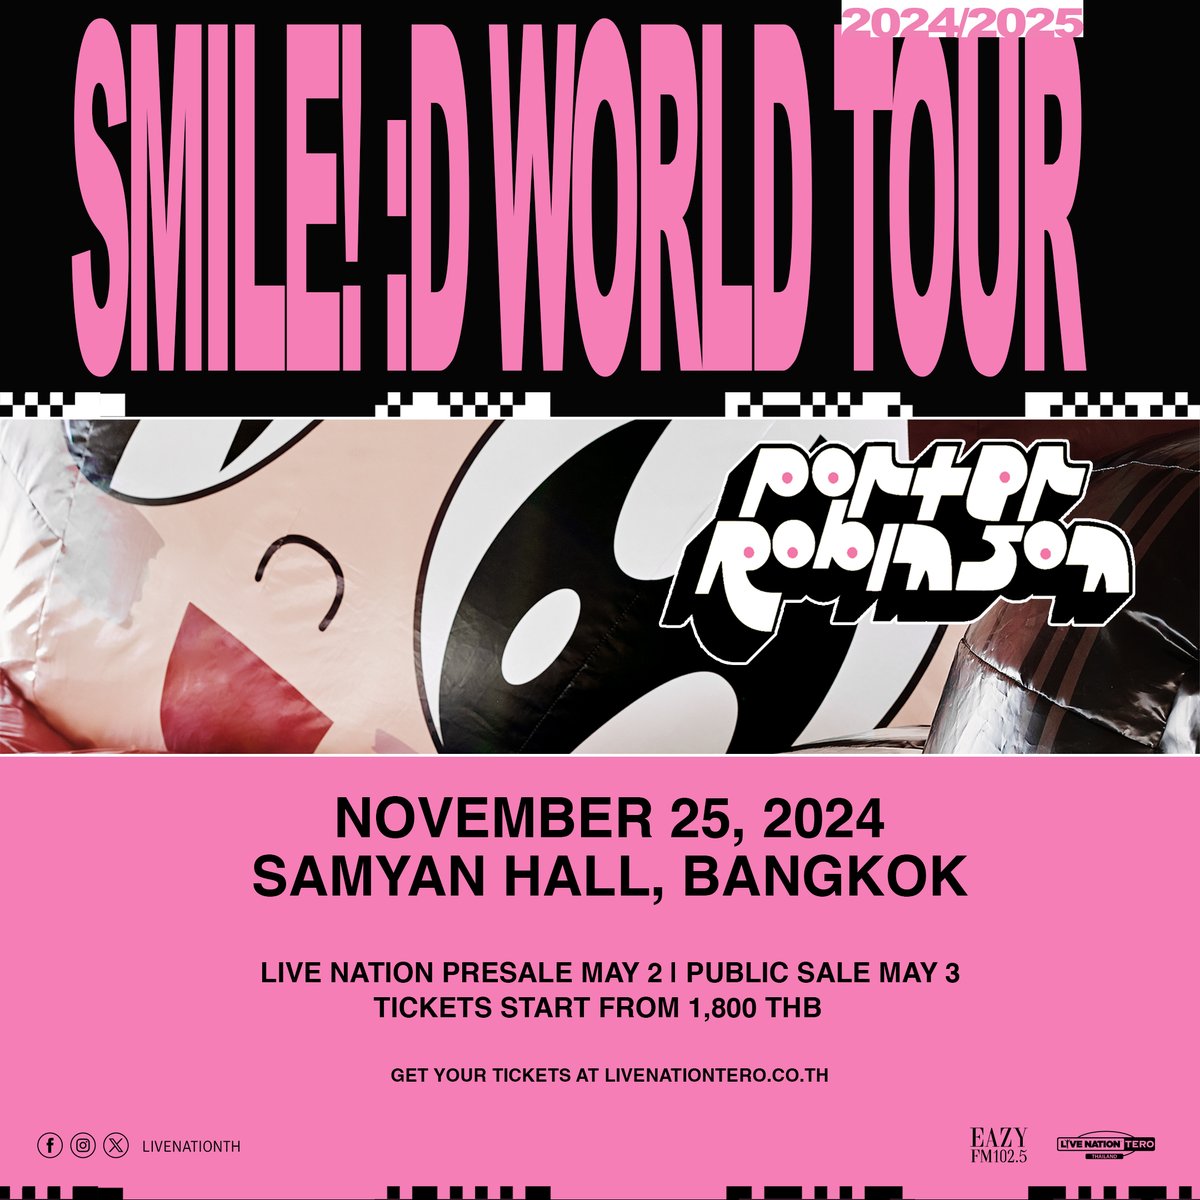 วีไอพีแพ็คเกจ SMILE EARLY ENTRY ของ#SmileWorldTourBKK มาแร้ว! คลิก vip.livenation.asia Our 'SMILE EARLY ENTRY VIP PACKAGE' for •̀.̫•́✧ “Porter Robinson : Smile World Tour” in Bangkok is out now! More details at vip.livenation.asia #PorterRobinson #SmileWorldTour